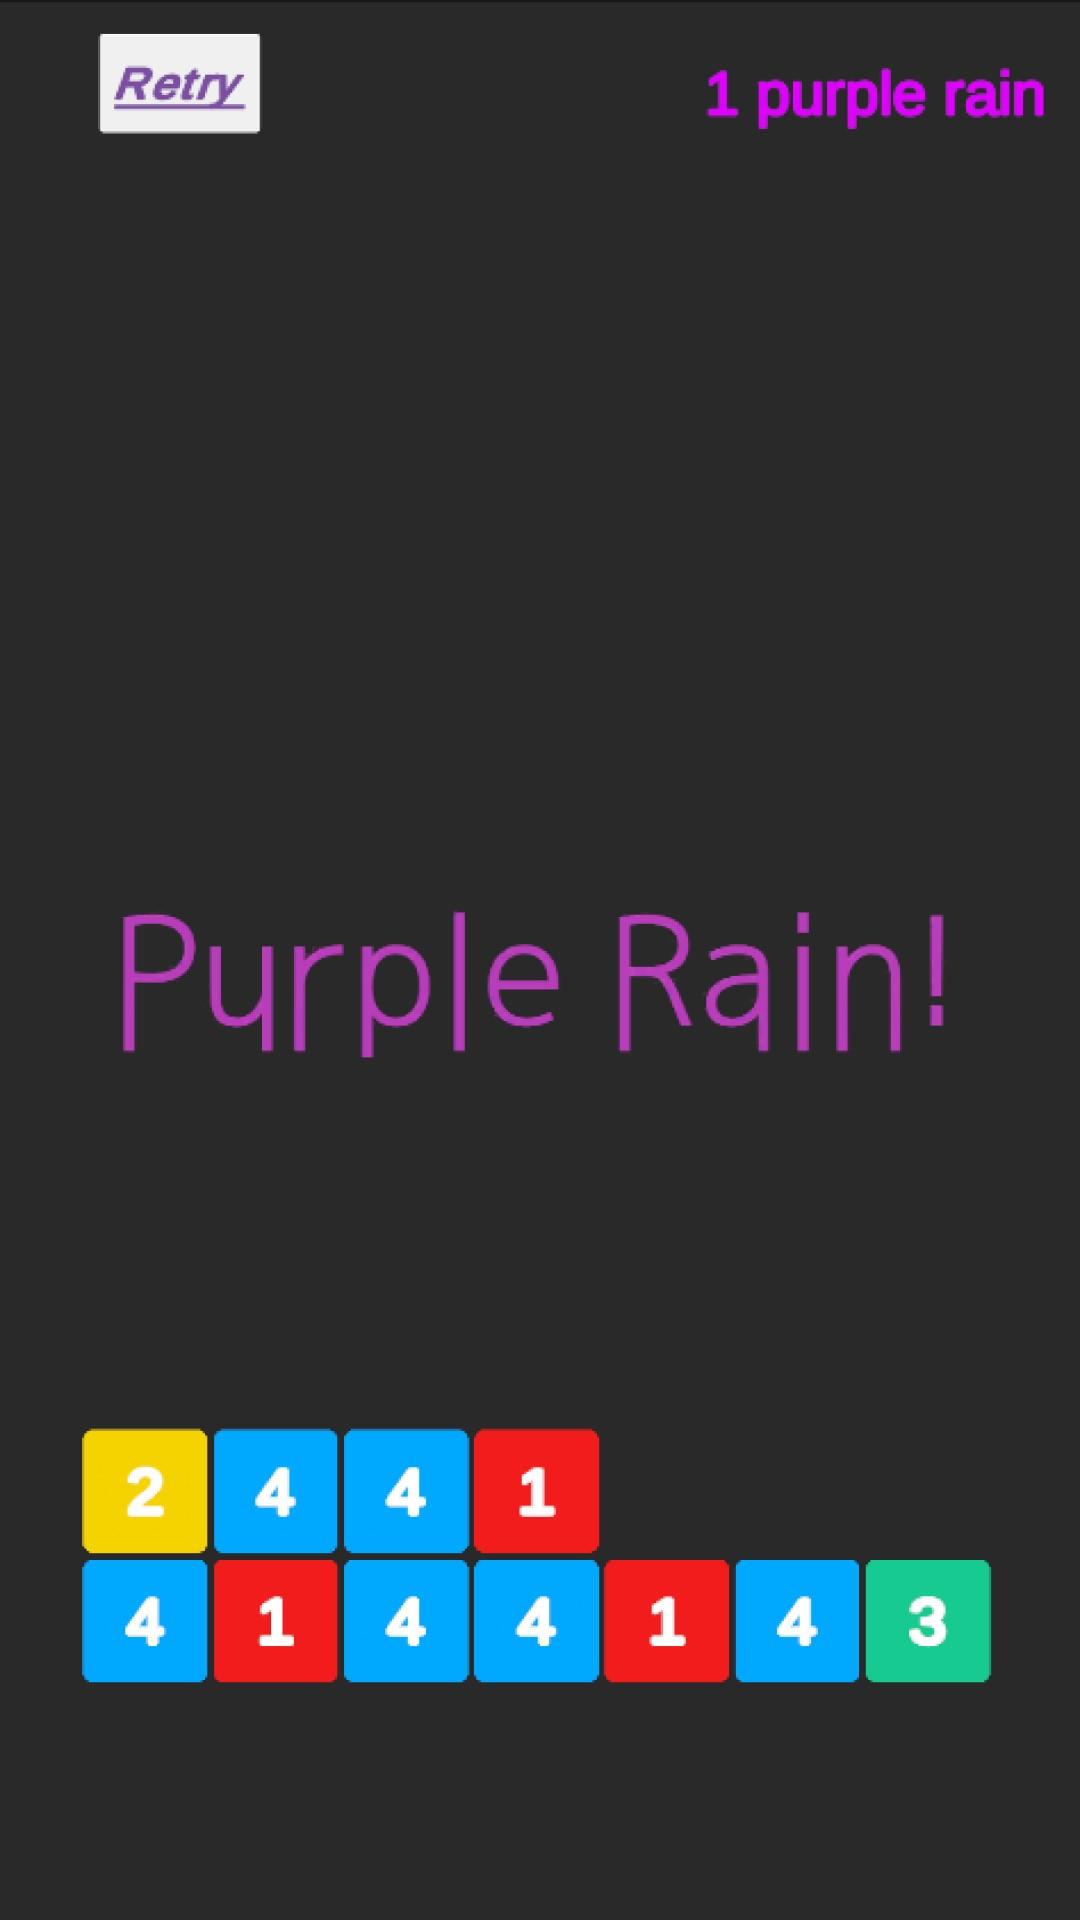 Purple Rain! - 数字のSAME GAMEのキャプチャ